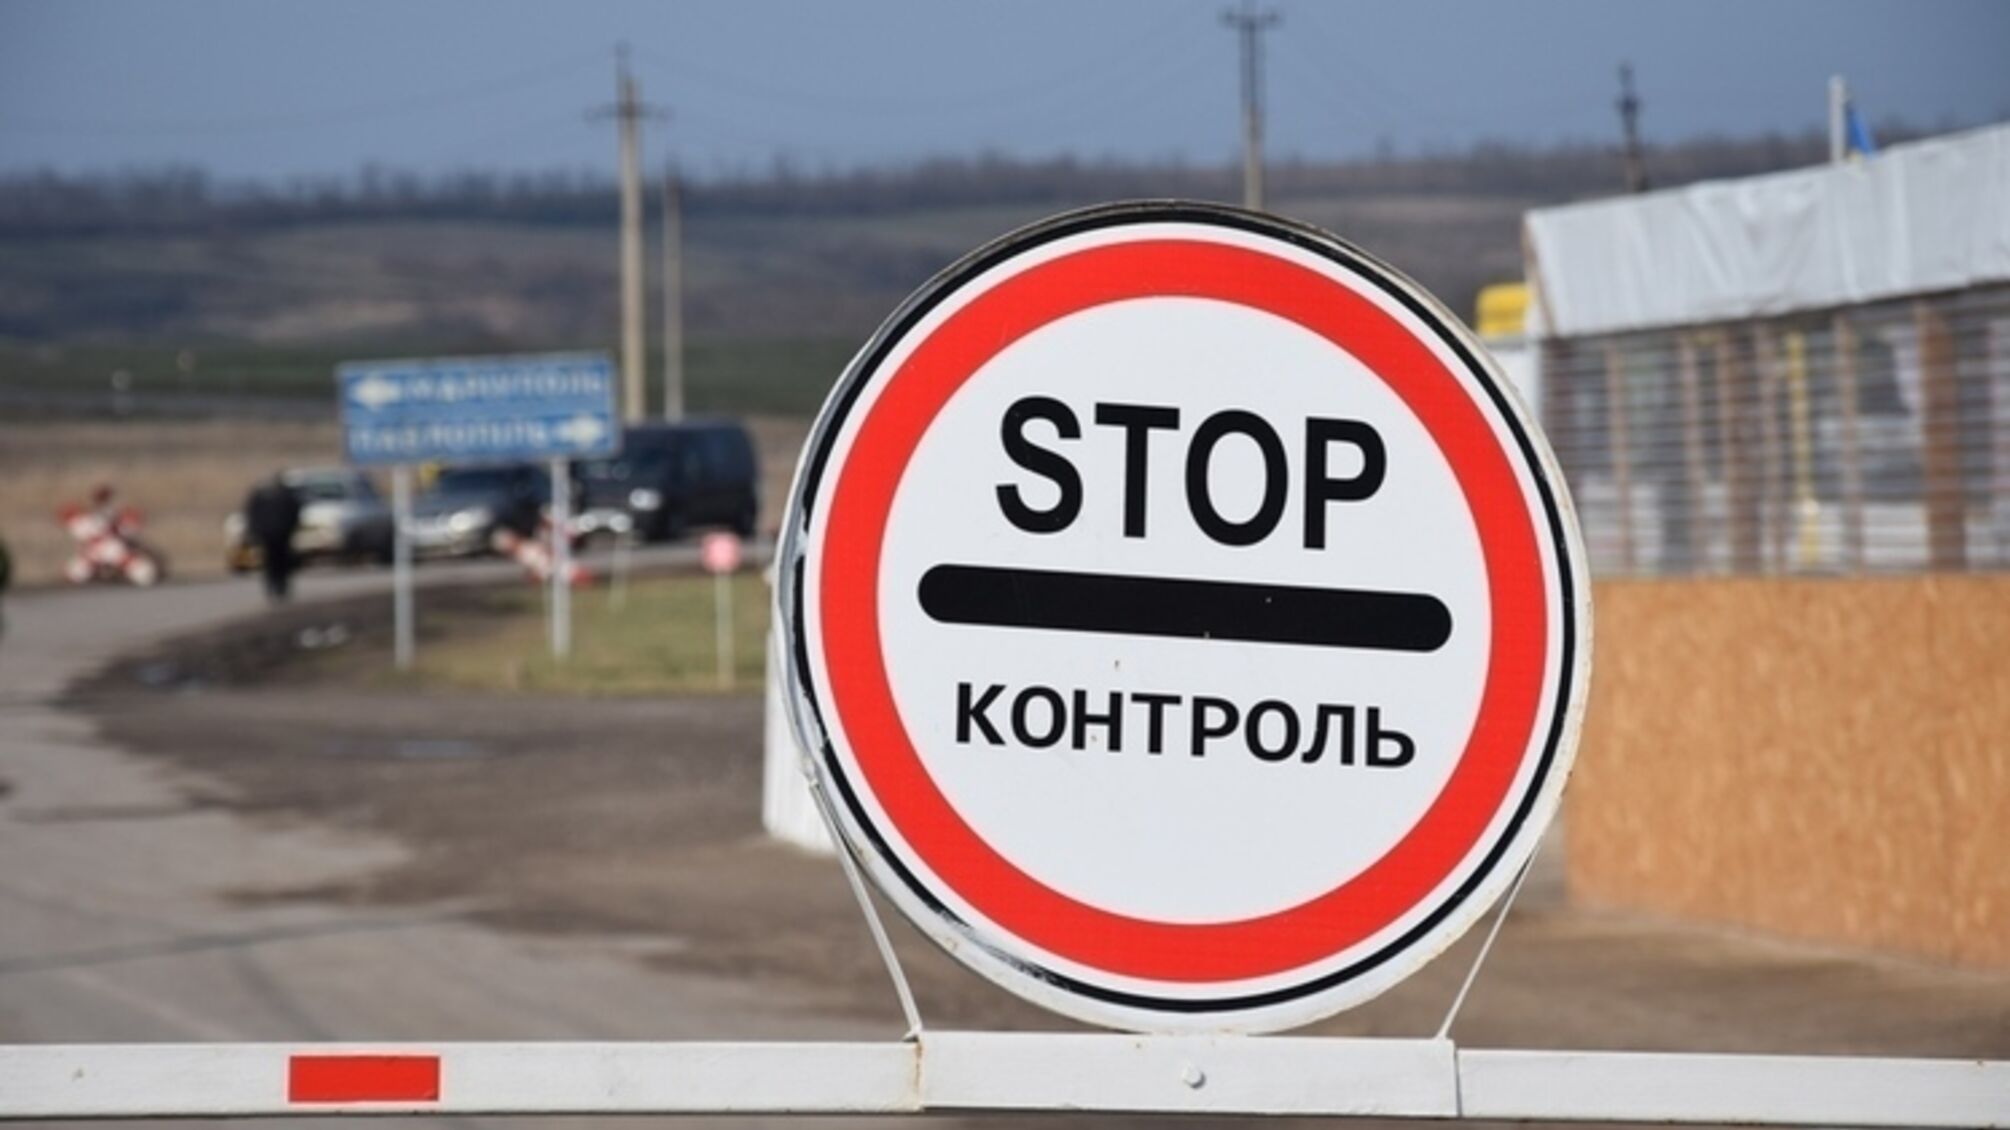 Прятался в грузовике: в Одесской области пограничники обнаружили 'лишнего' пассажира